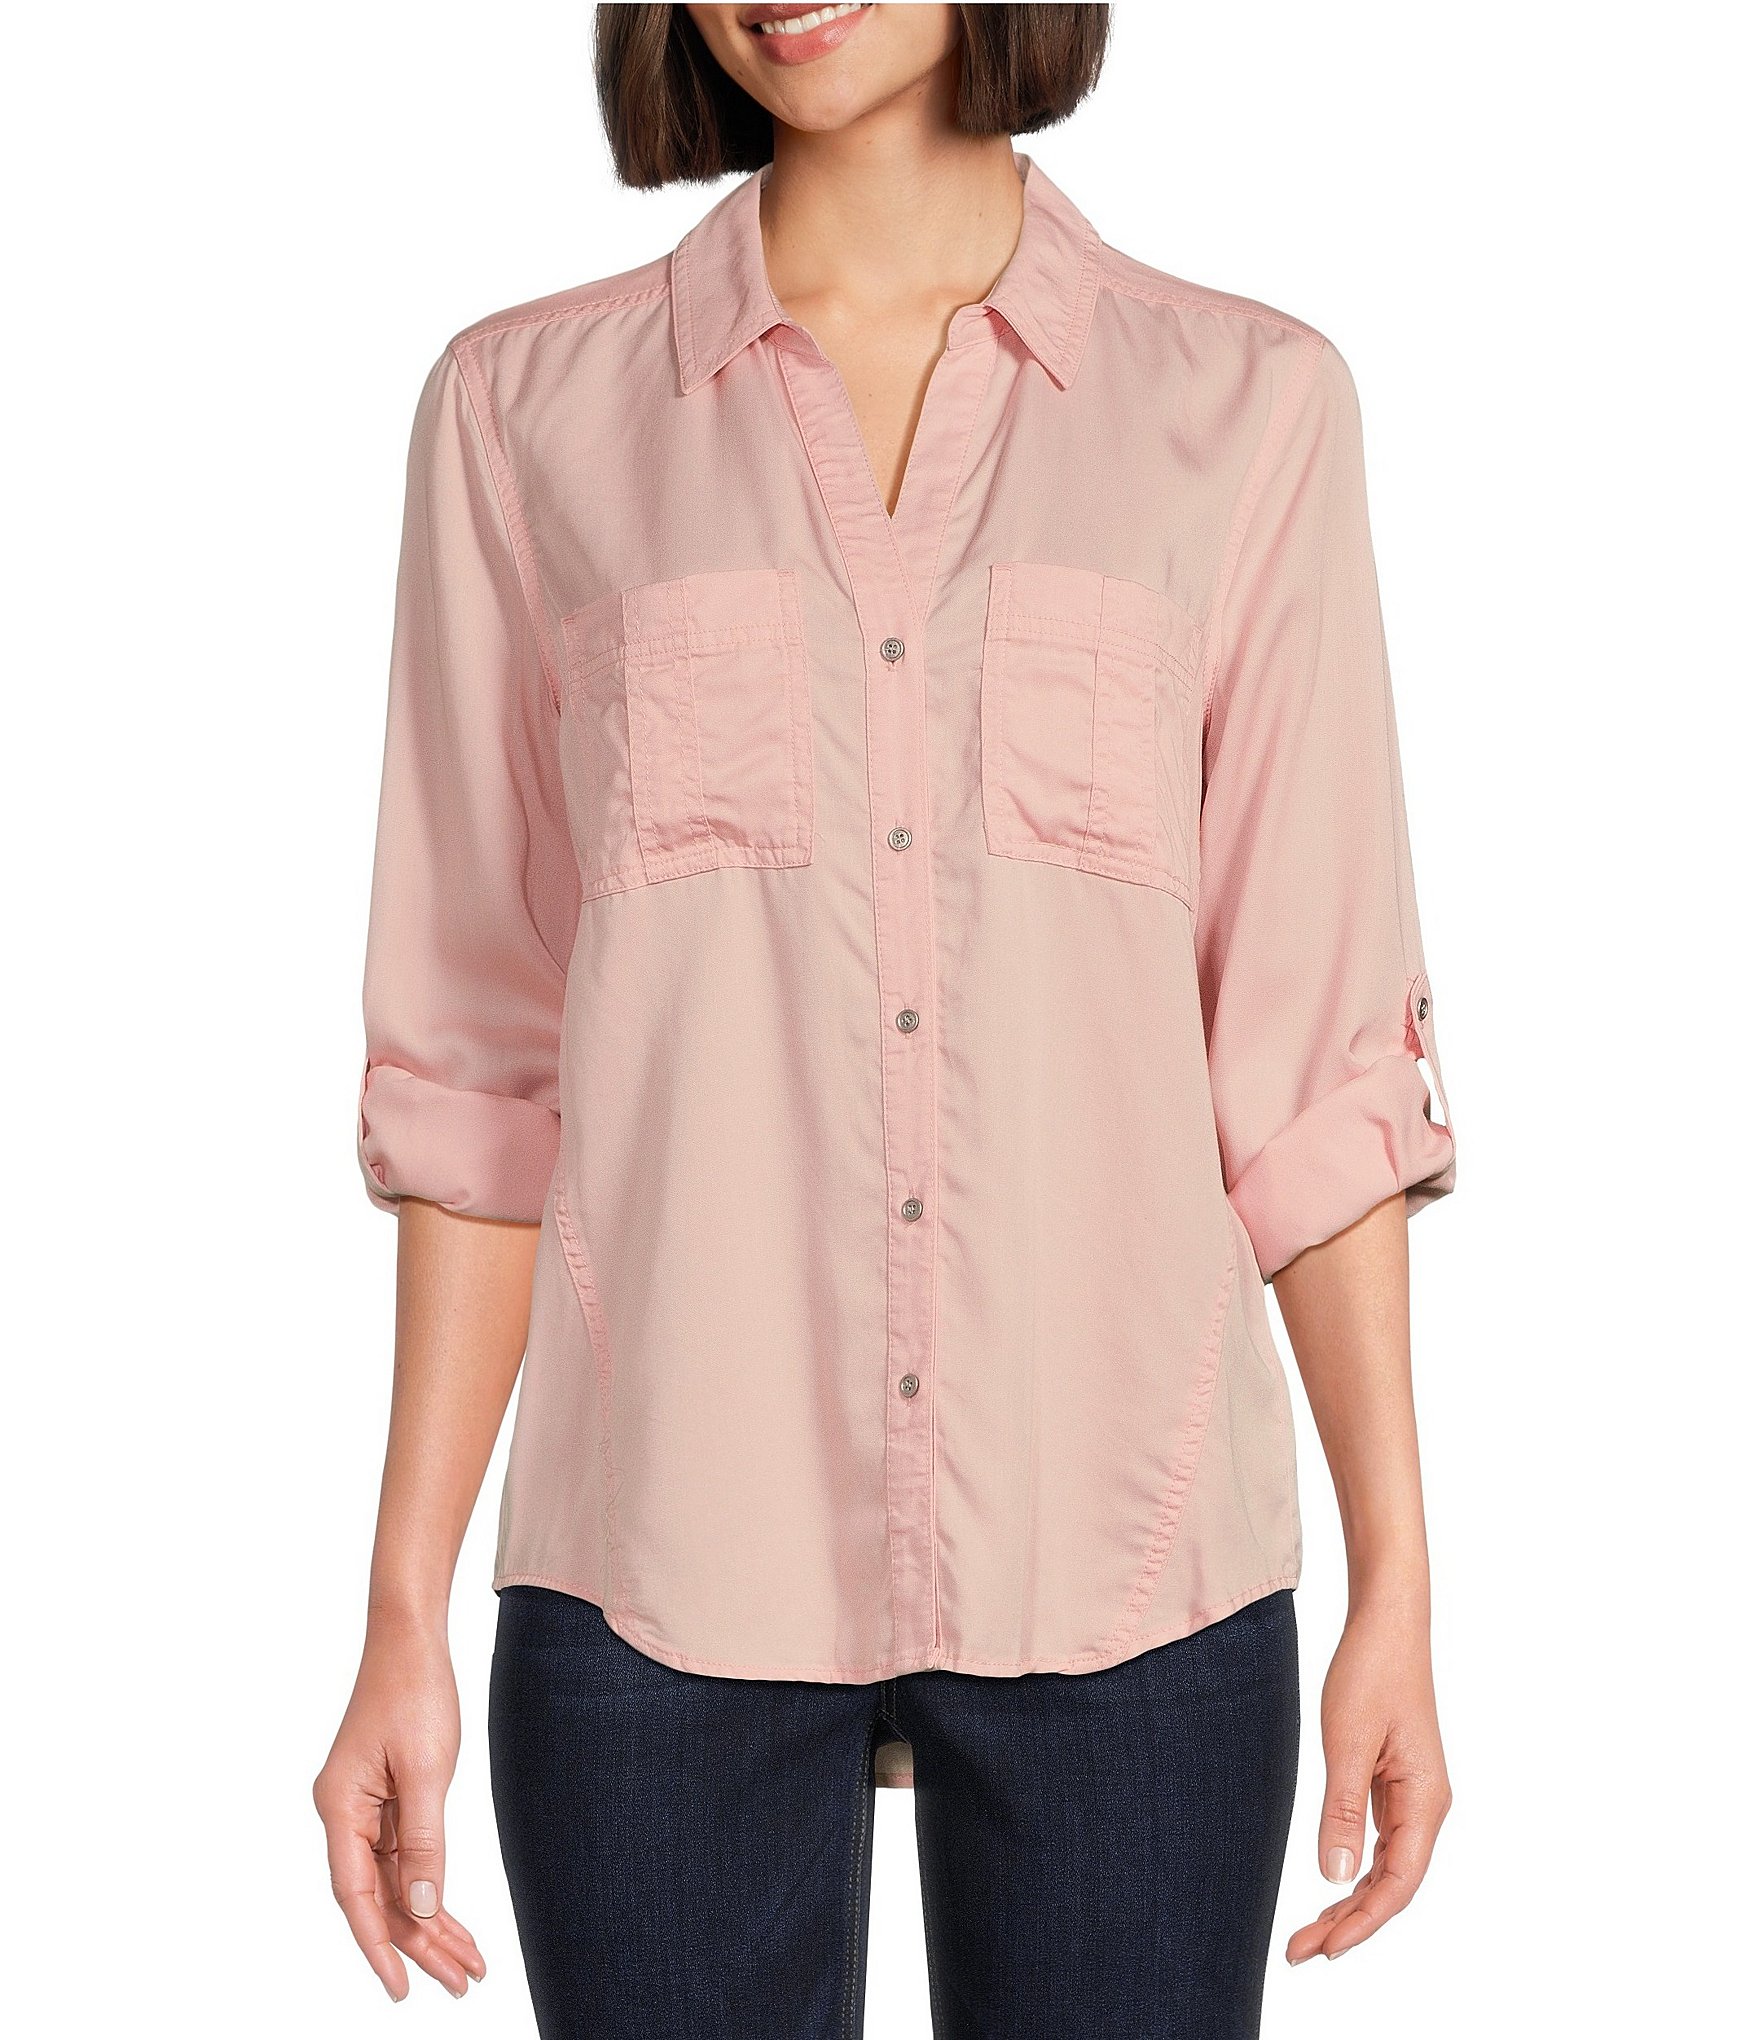 Ann Taylor Women Size Medium Pink Long Sleeve Casual Shirt Top 16